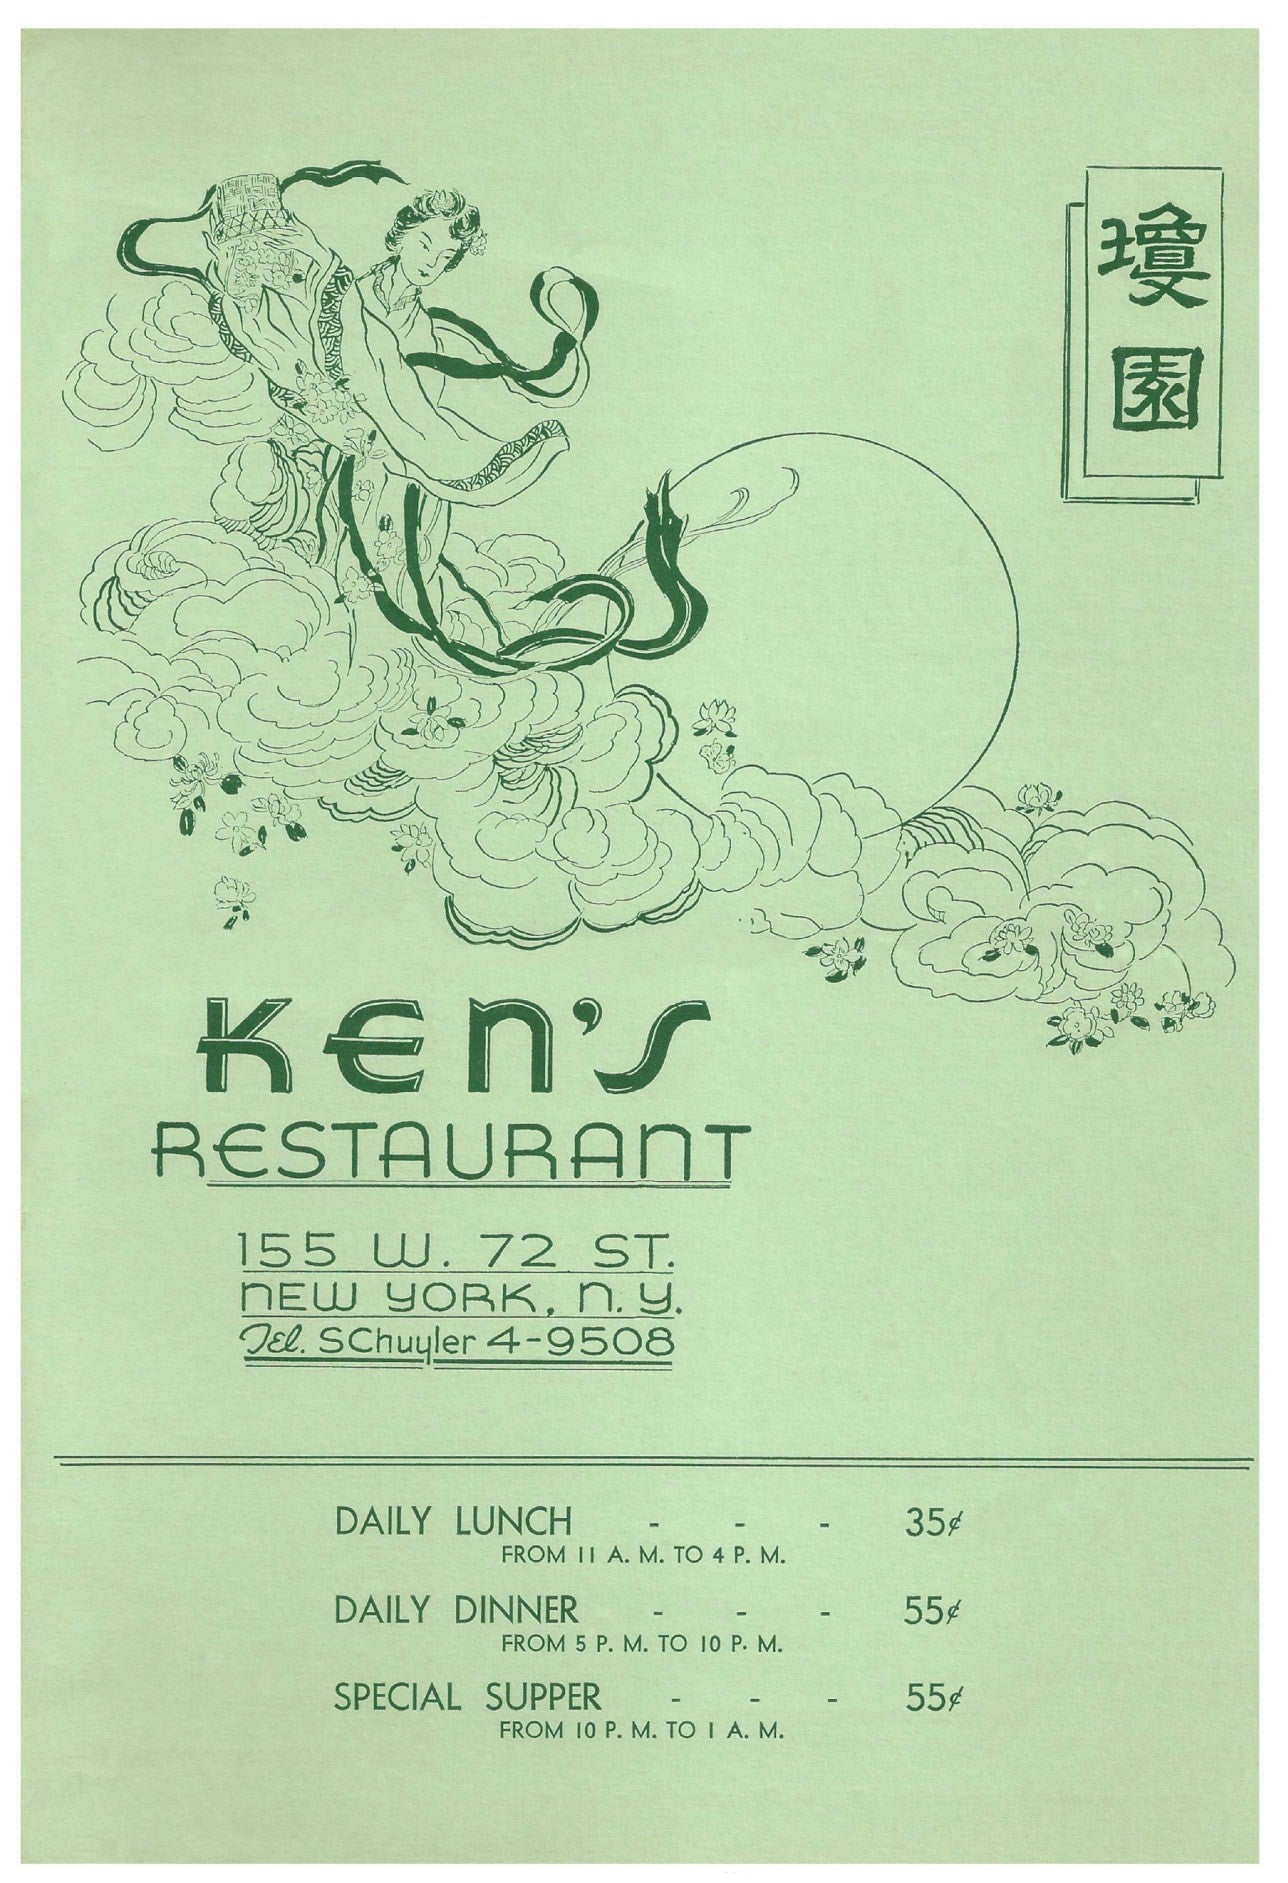 Ken's Restaurant, New York, 1942